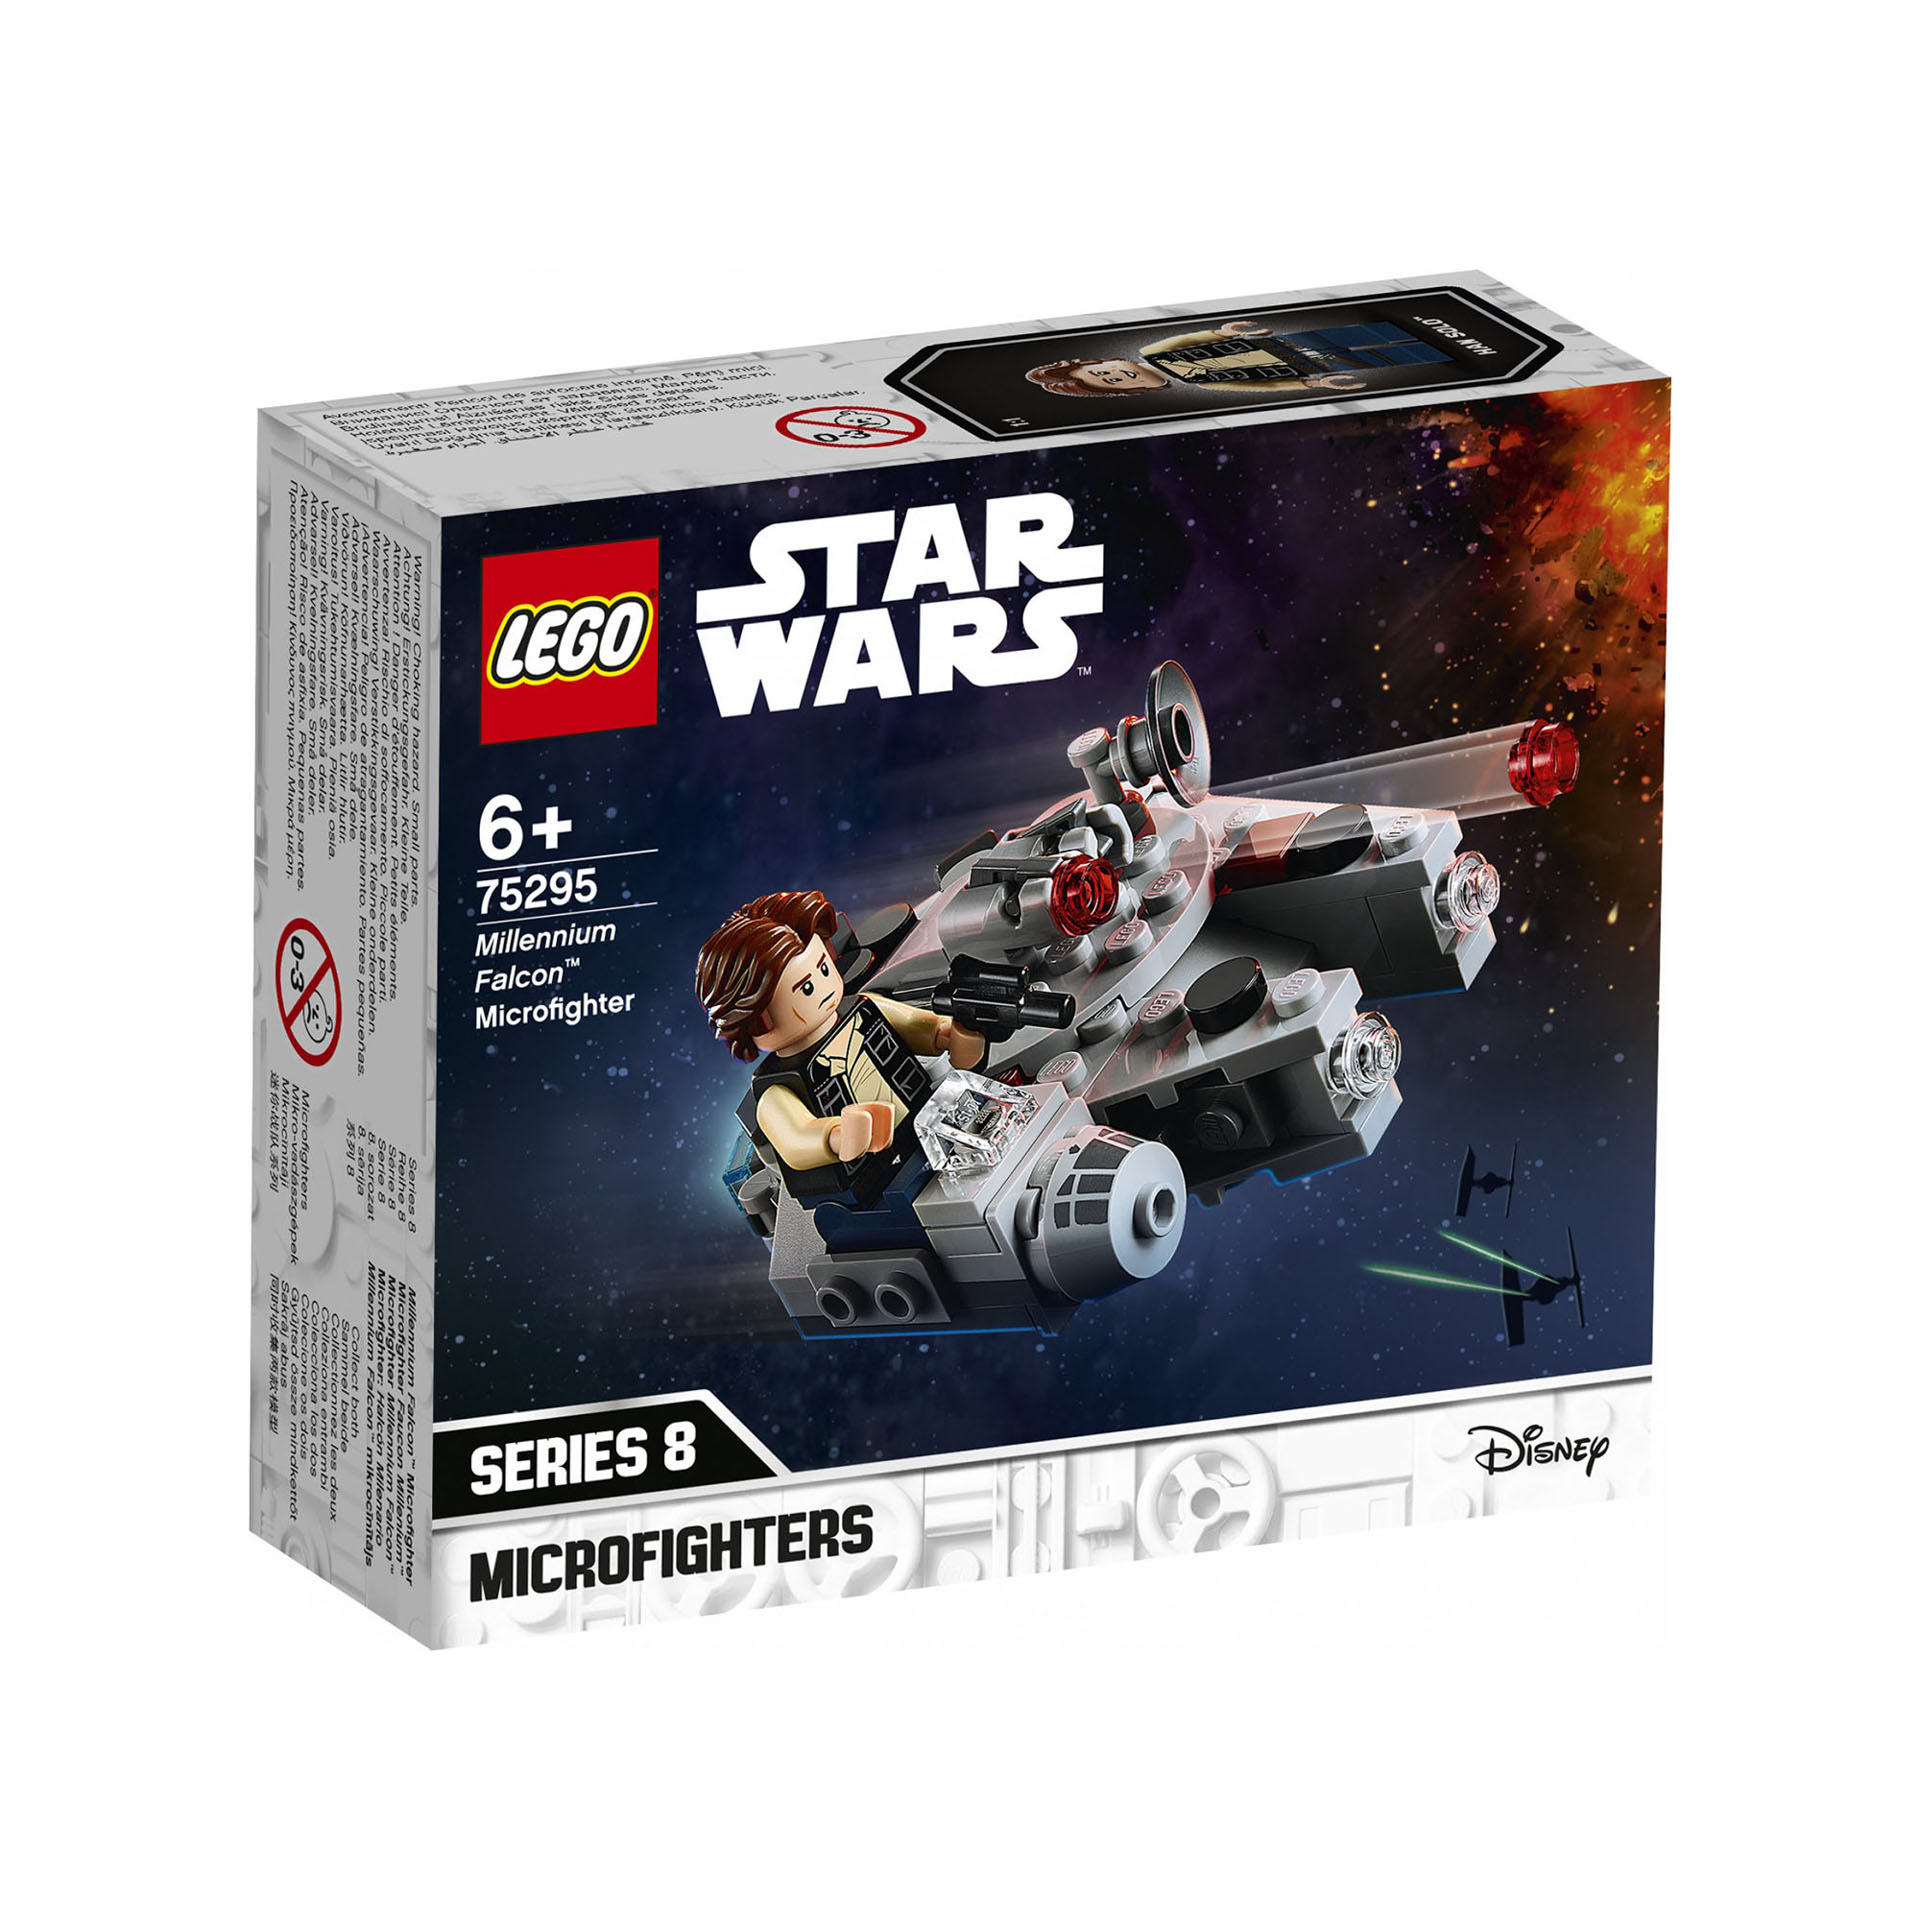 LEGO Star Wars Microfighter Millennium Falcon, Giocattolo con Minifigure di Han  75295, , large